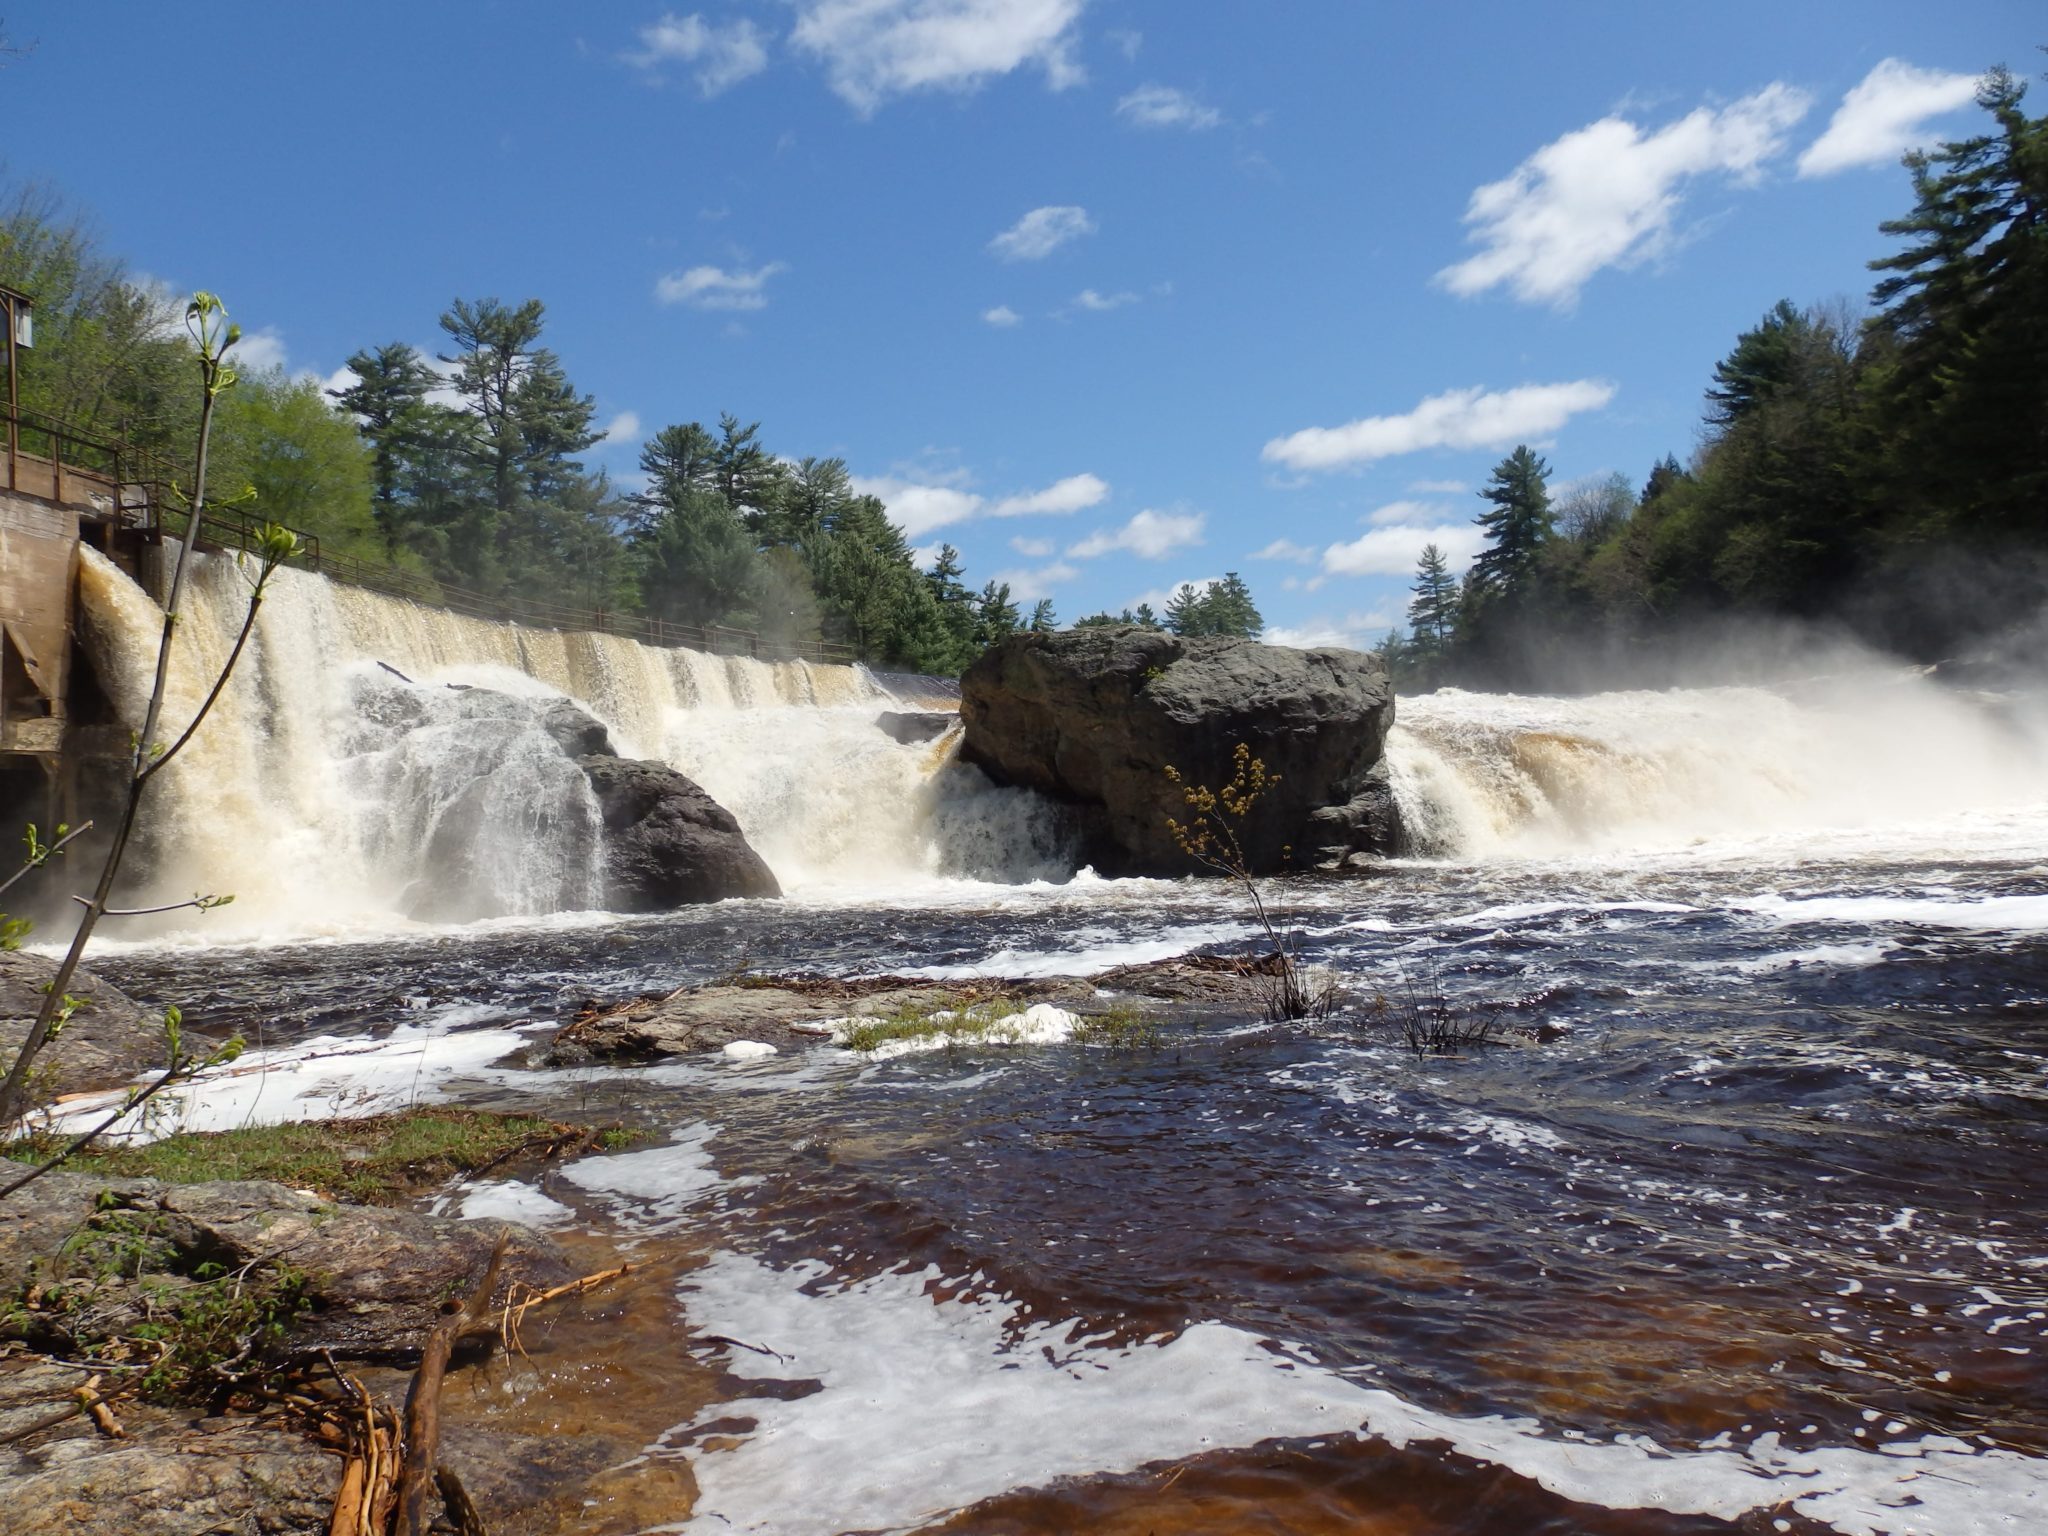 Buttermilk Falls – Little Falls